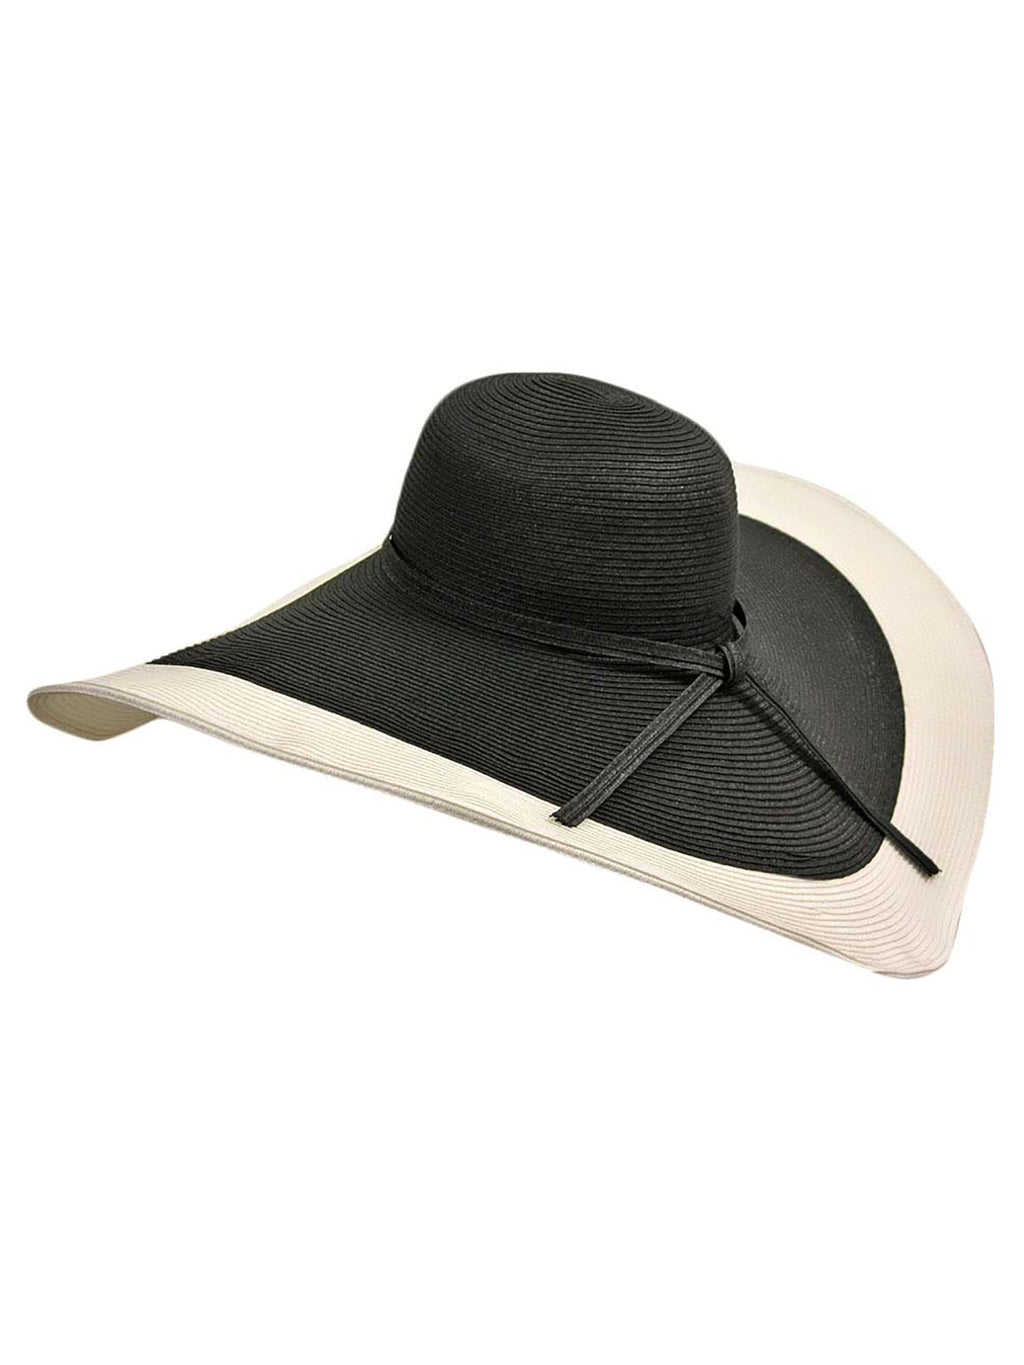 Black & White Floppy Hat With Wide Brim